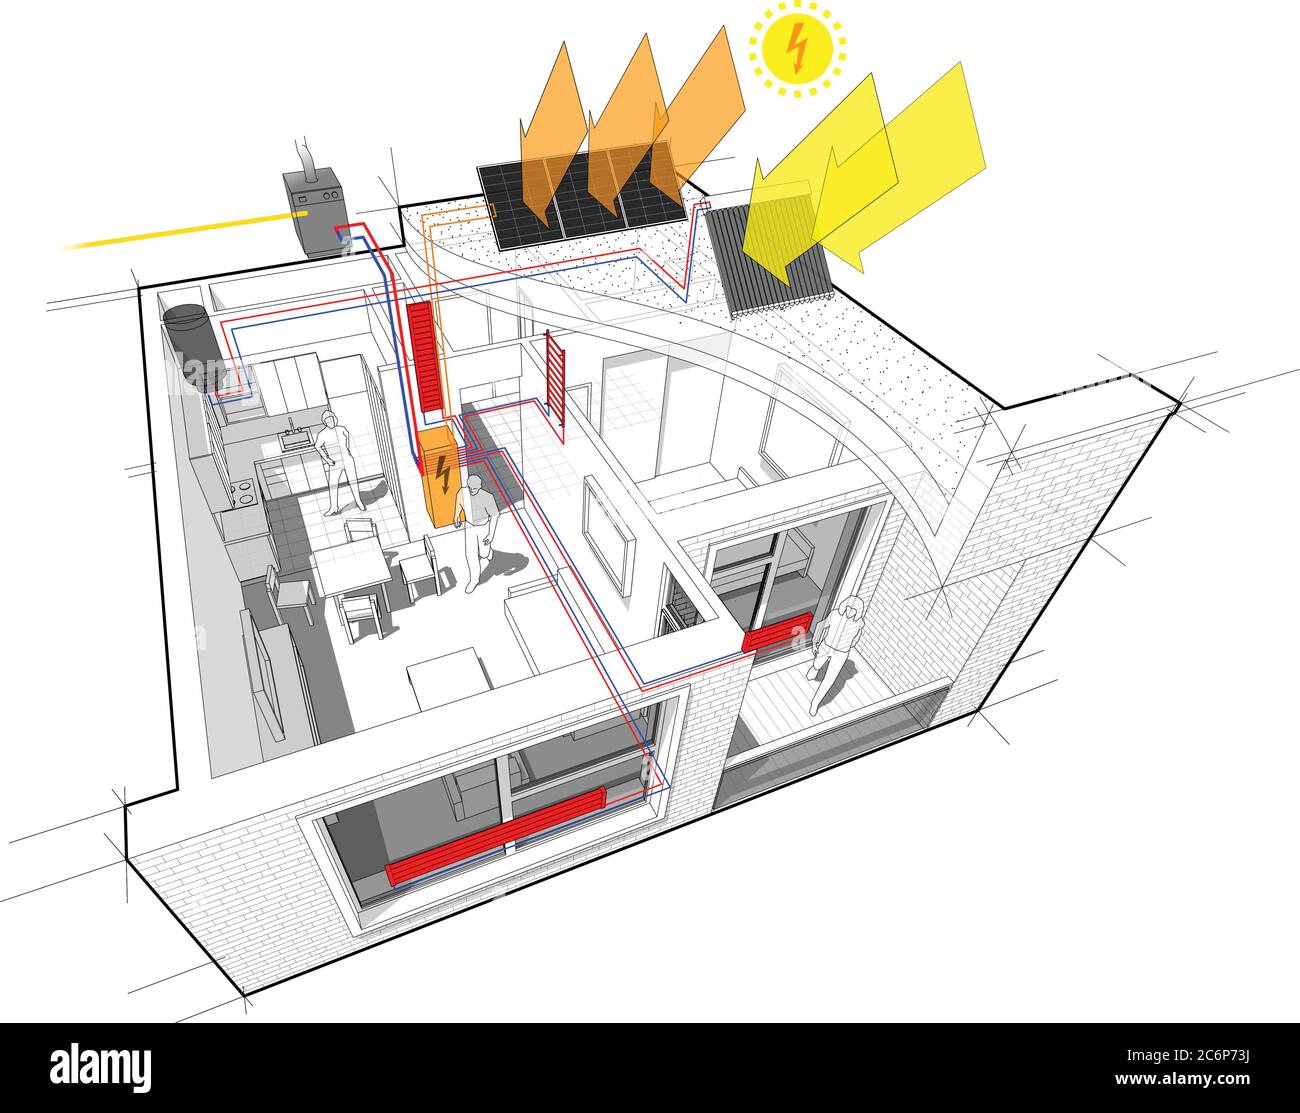 Schéma d'appartement avec chauffage du radiateur et chaudière à gaz et panneaux photovoltaïques et solaires Illustration de Vecteur